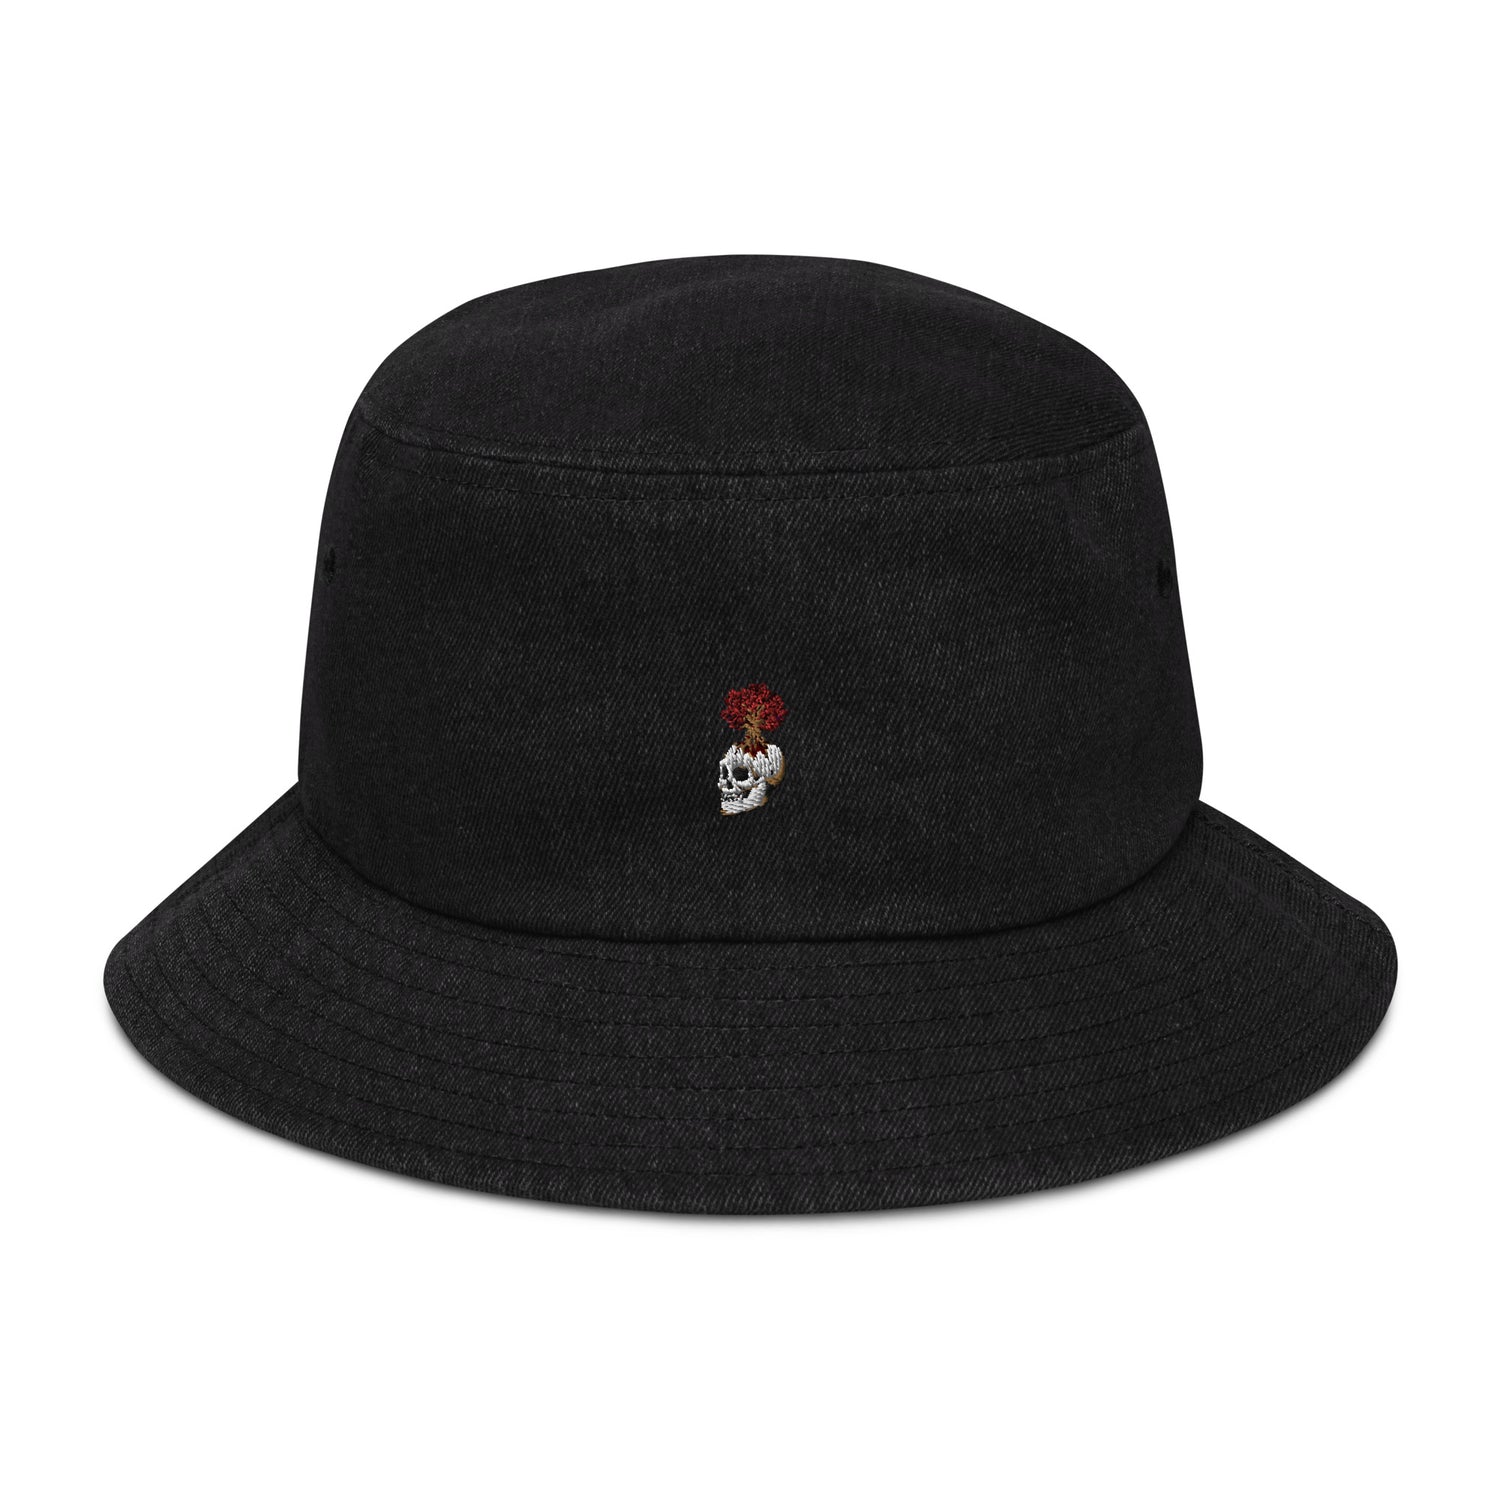 Caps & hats